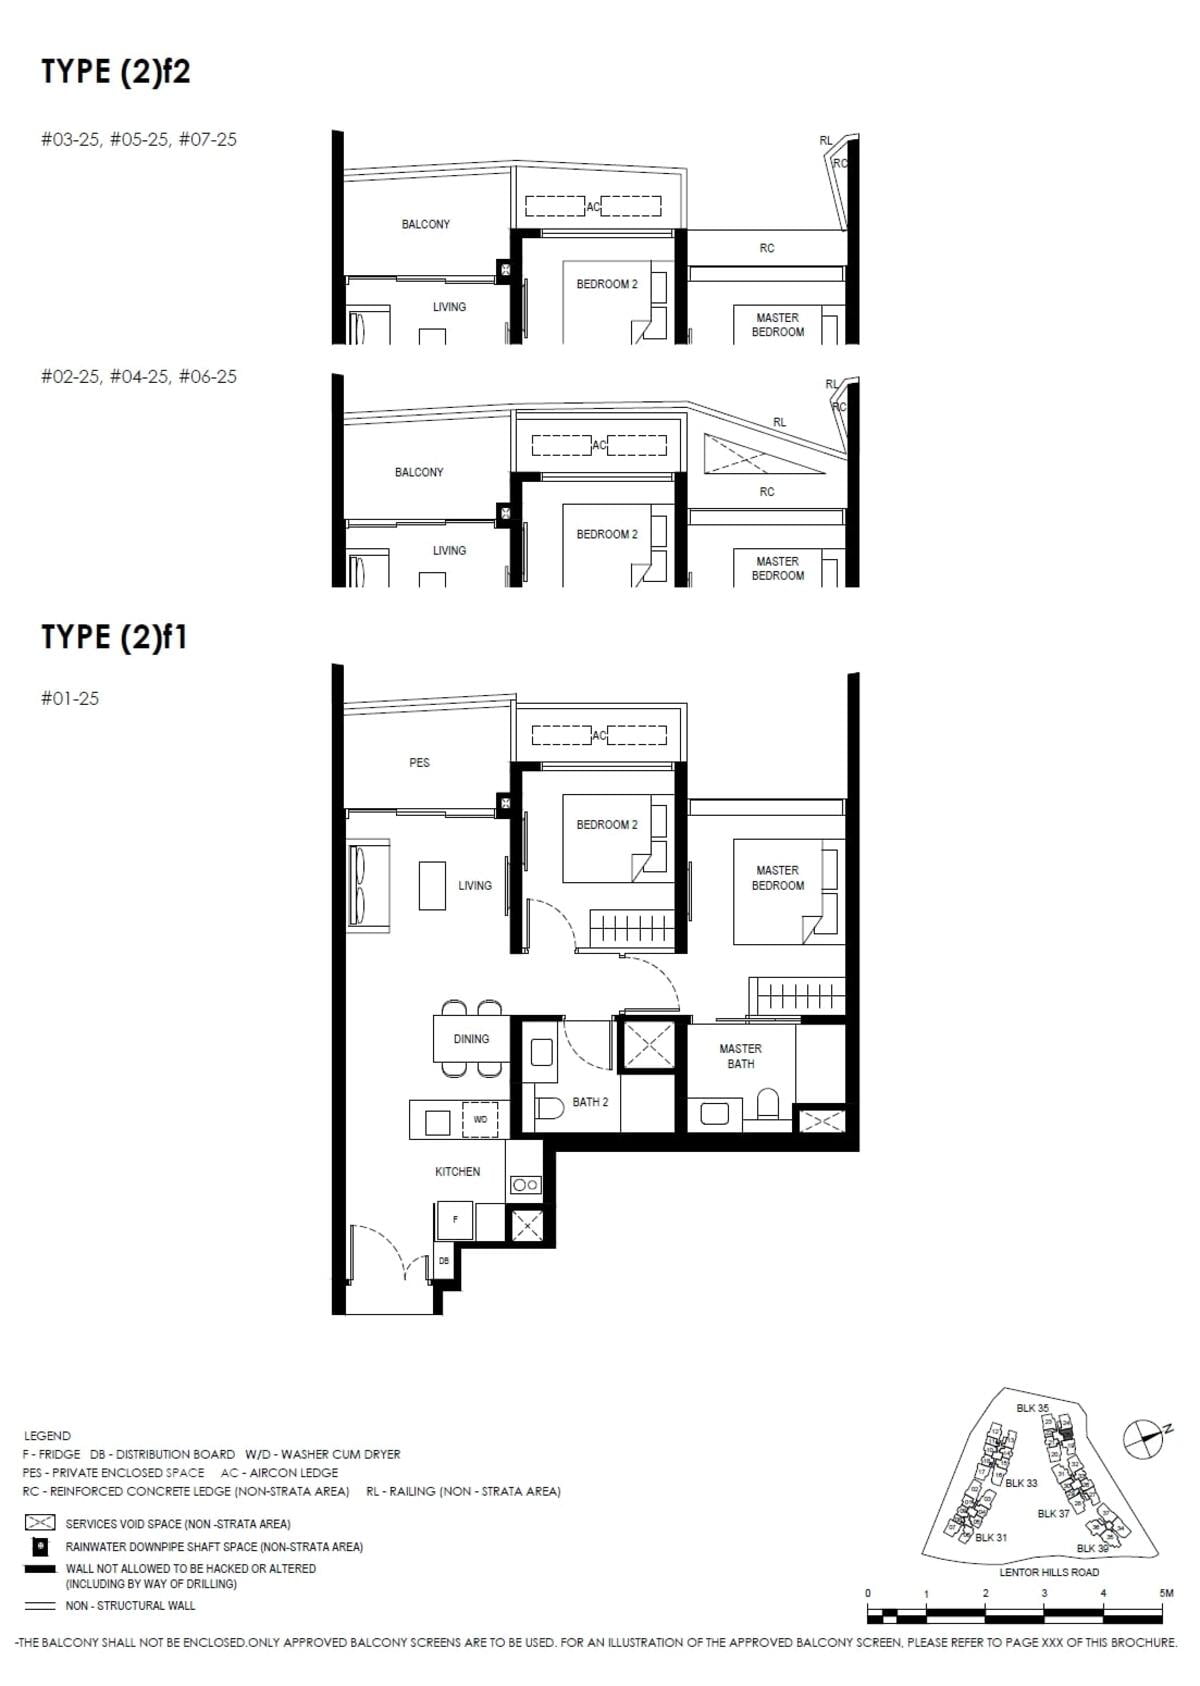 fp-lentor-hills-residences-2f1-floor-plan.jpg